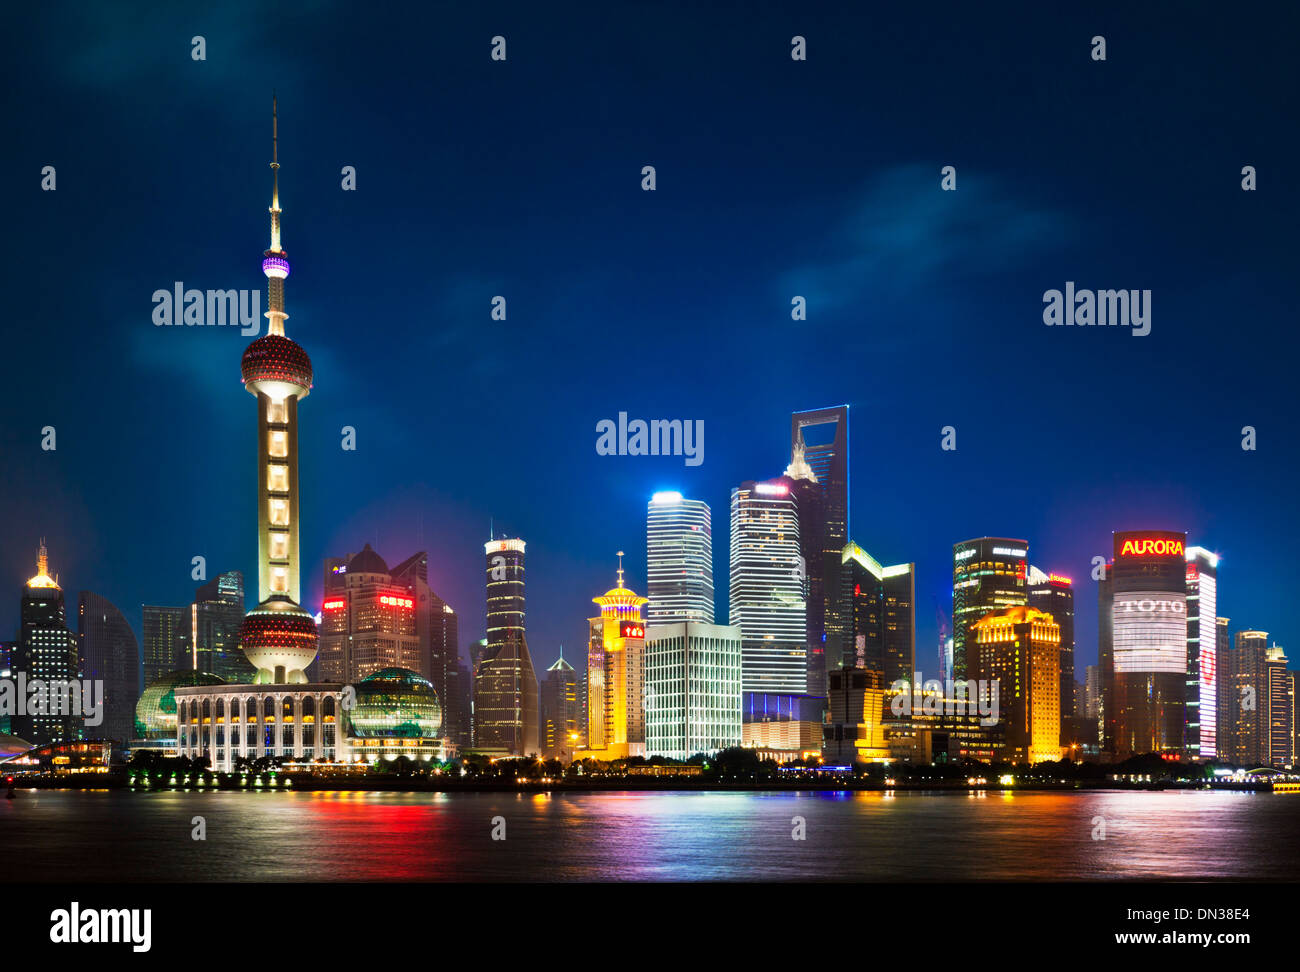 Skyline de Shanghai Pudong con perla iluminada por la noche China, República Popular de China, Asia Foto de stock